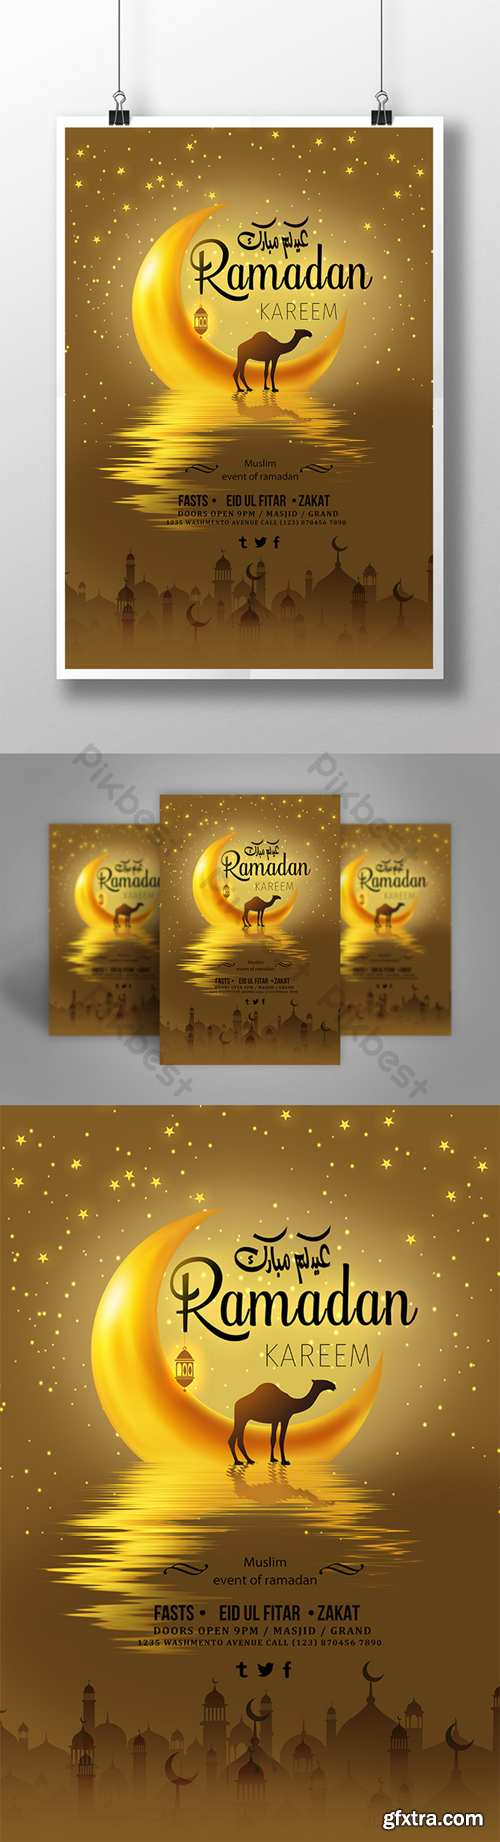 Creative golden background ramadan poster Template PSD